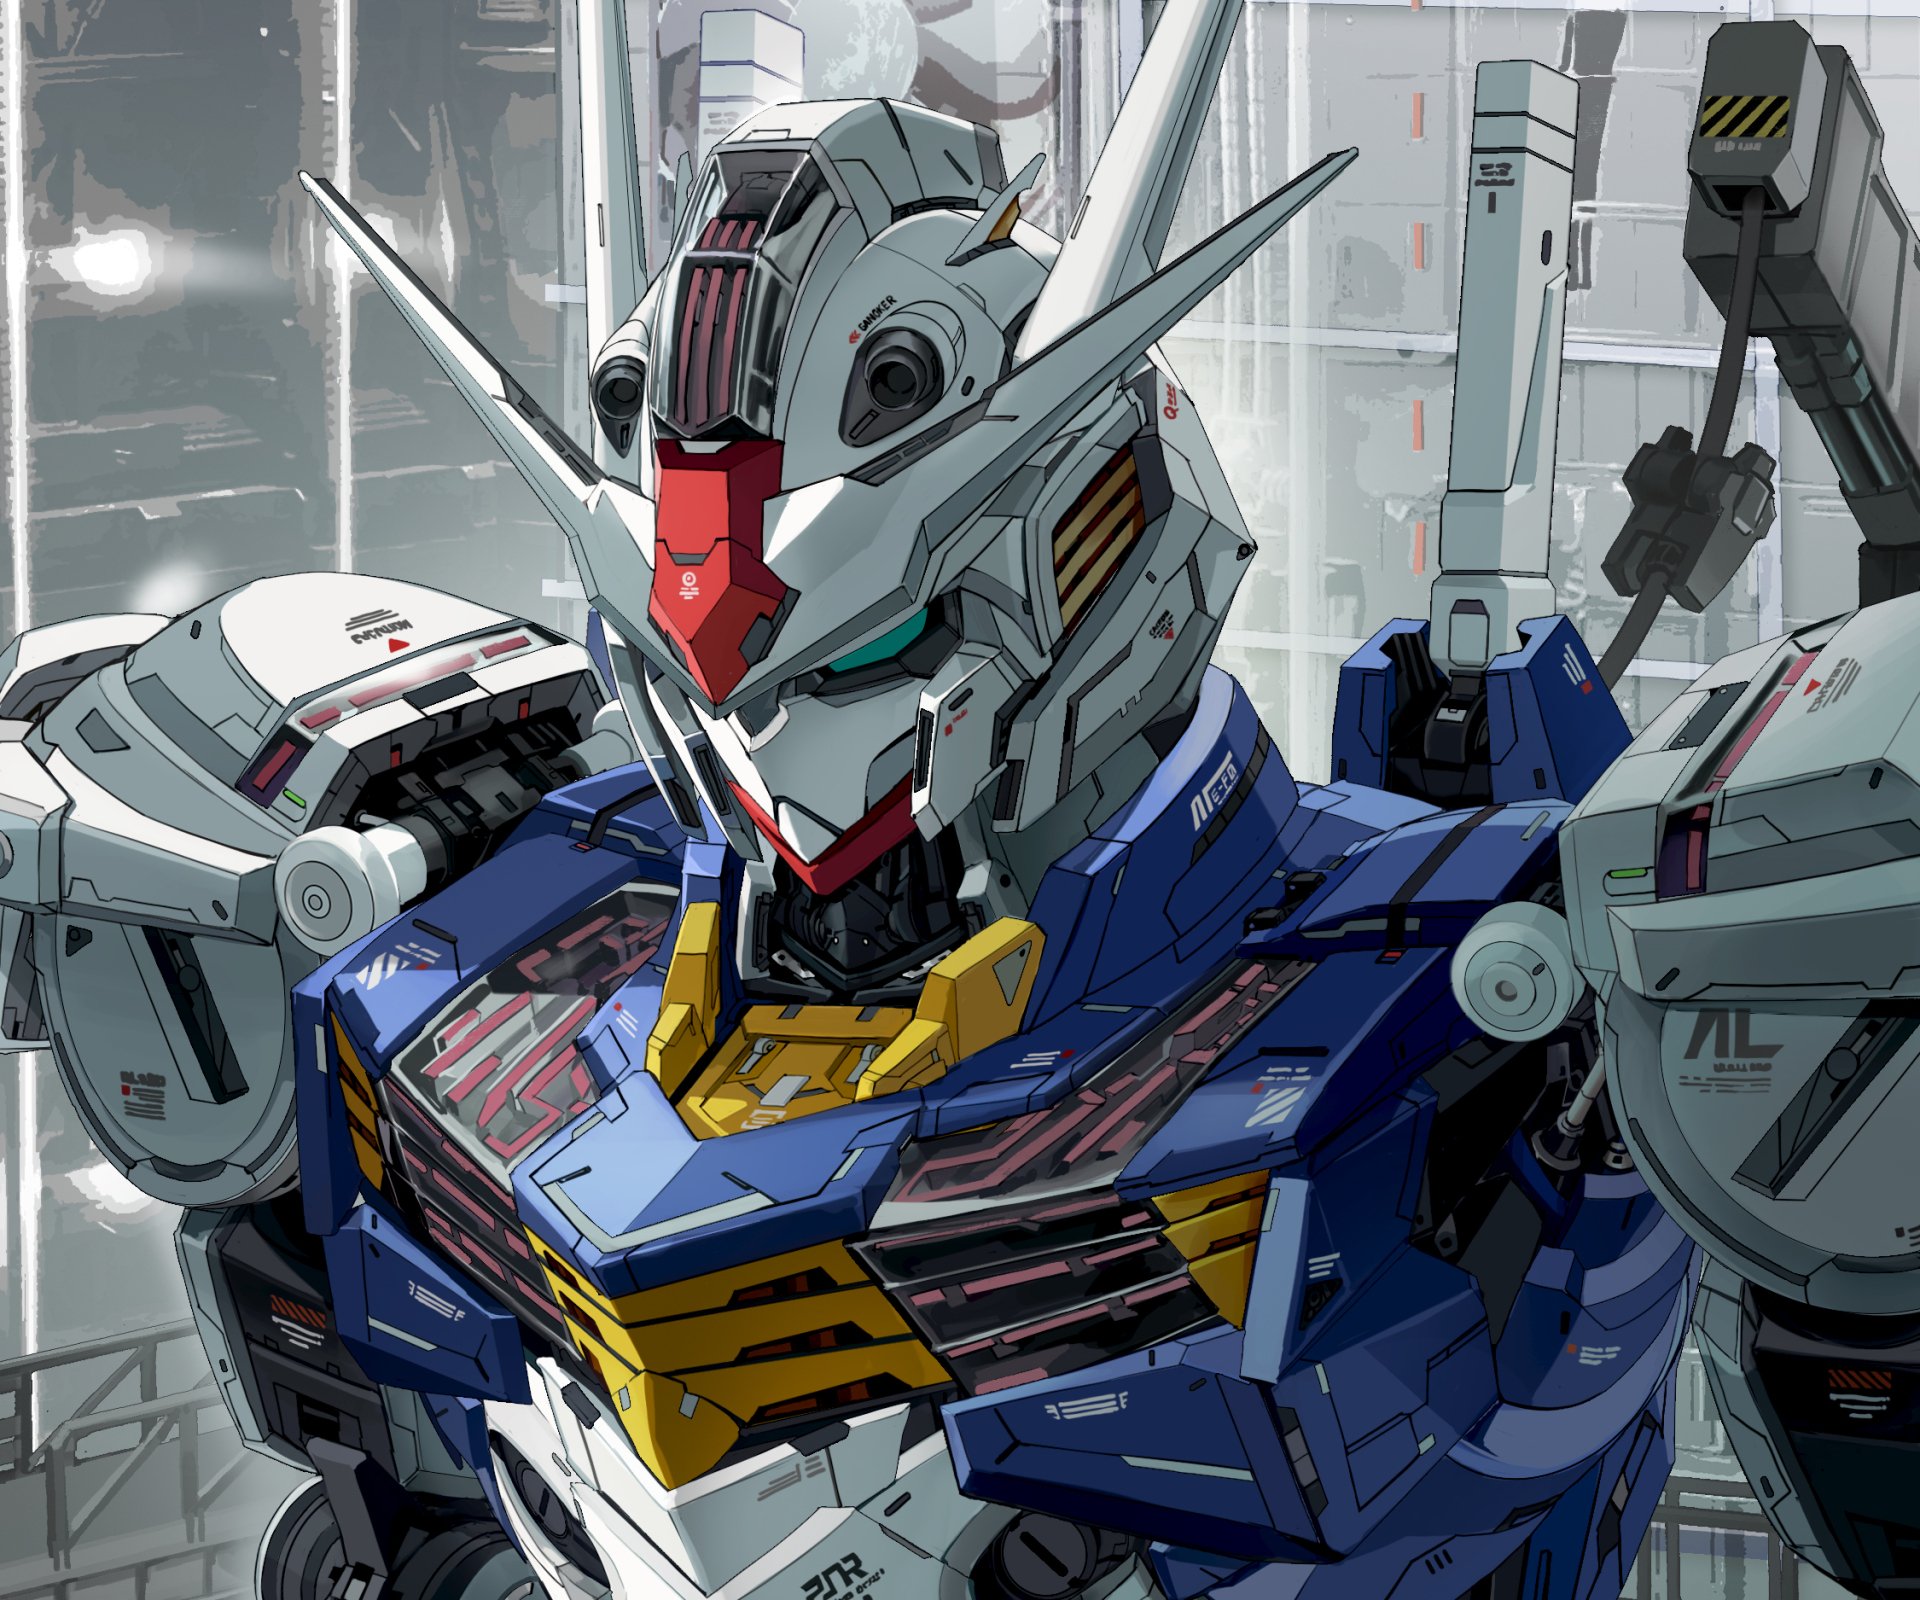 Hình Nền Động Gundam 4k | TikTok